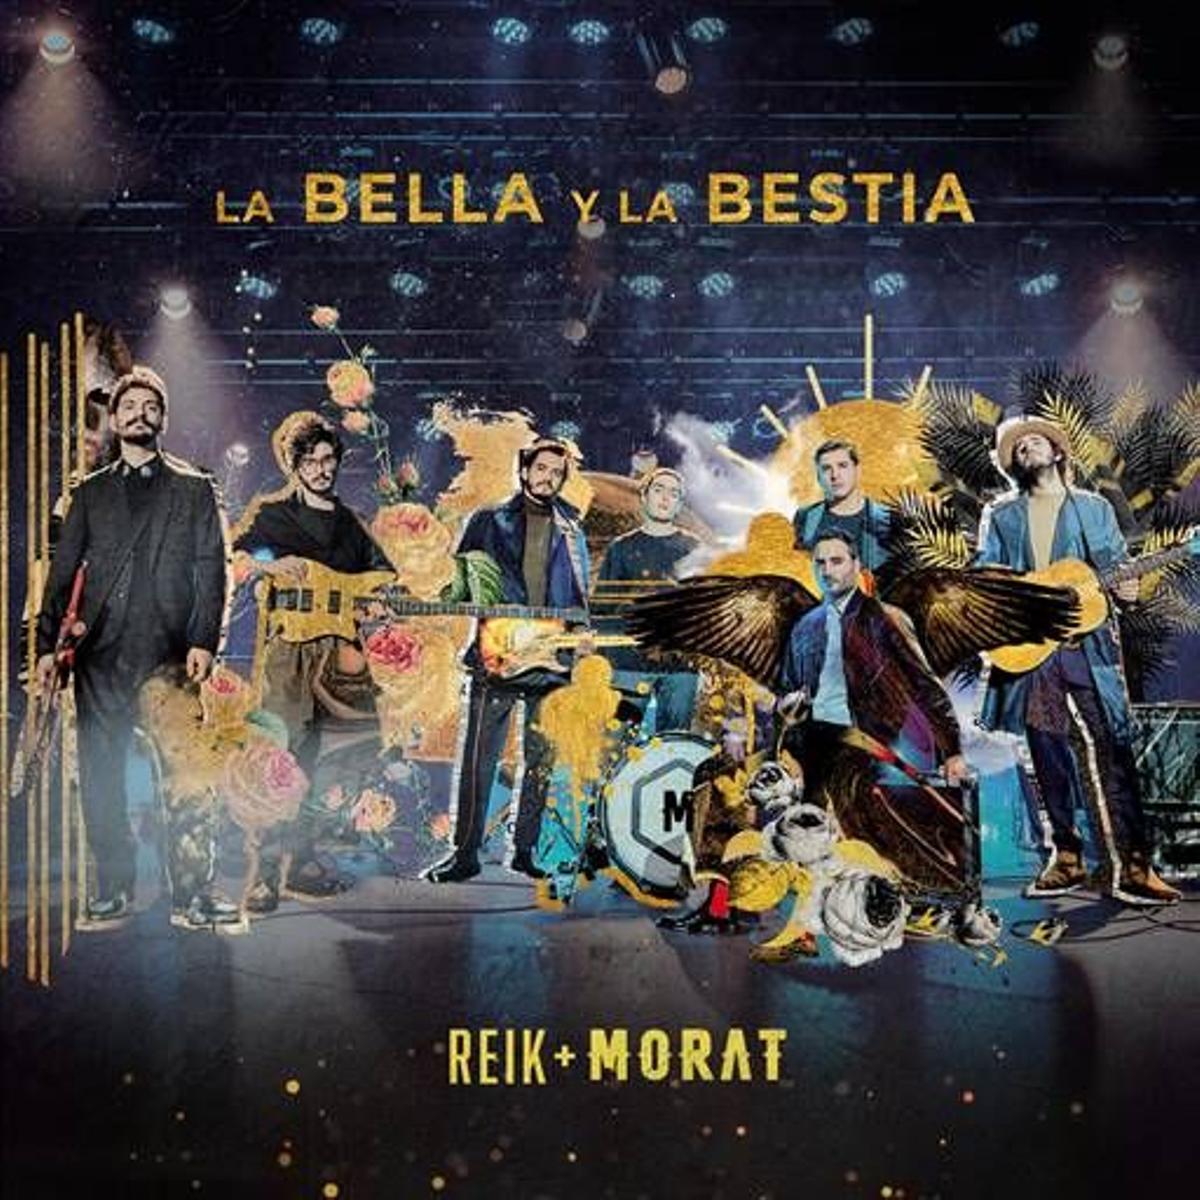 Reik y Morat estrenan juntos 'La bella y la bestia'